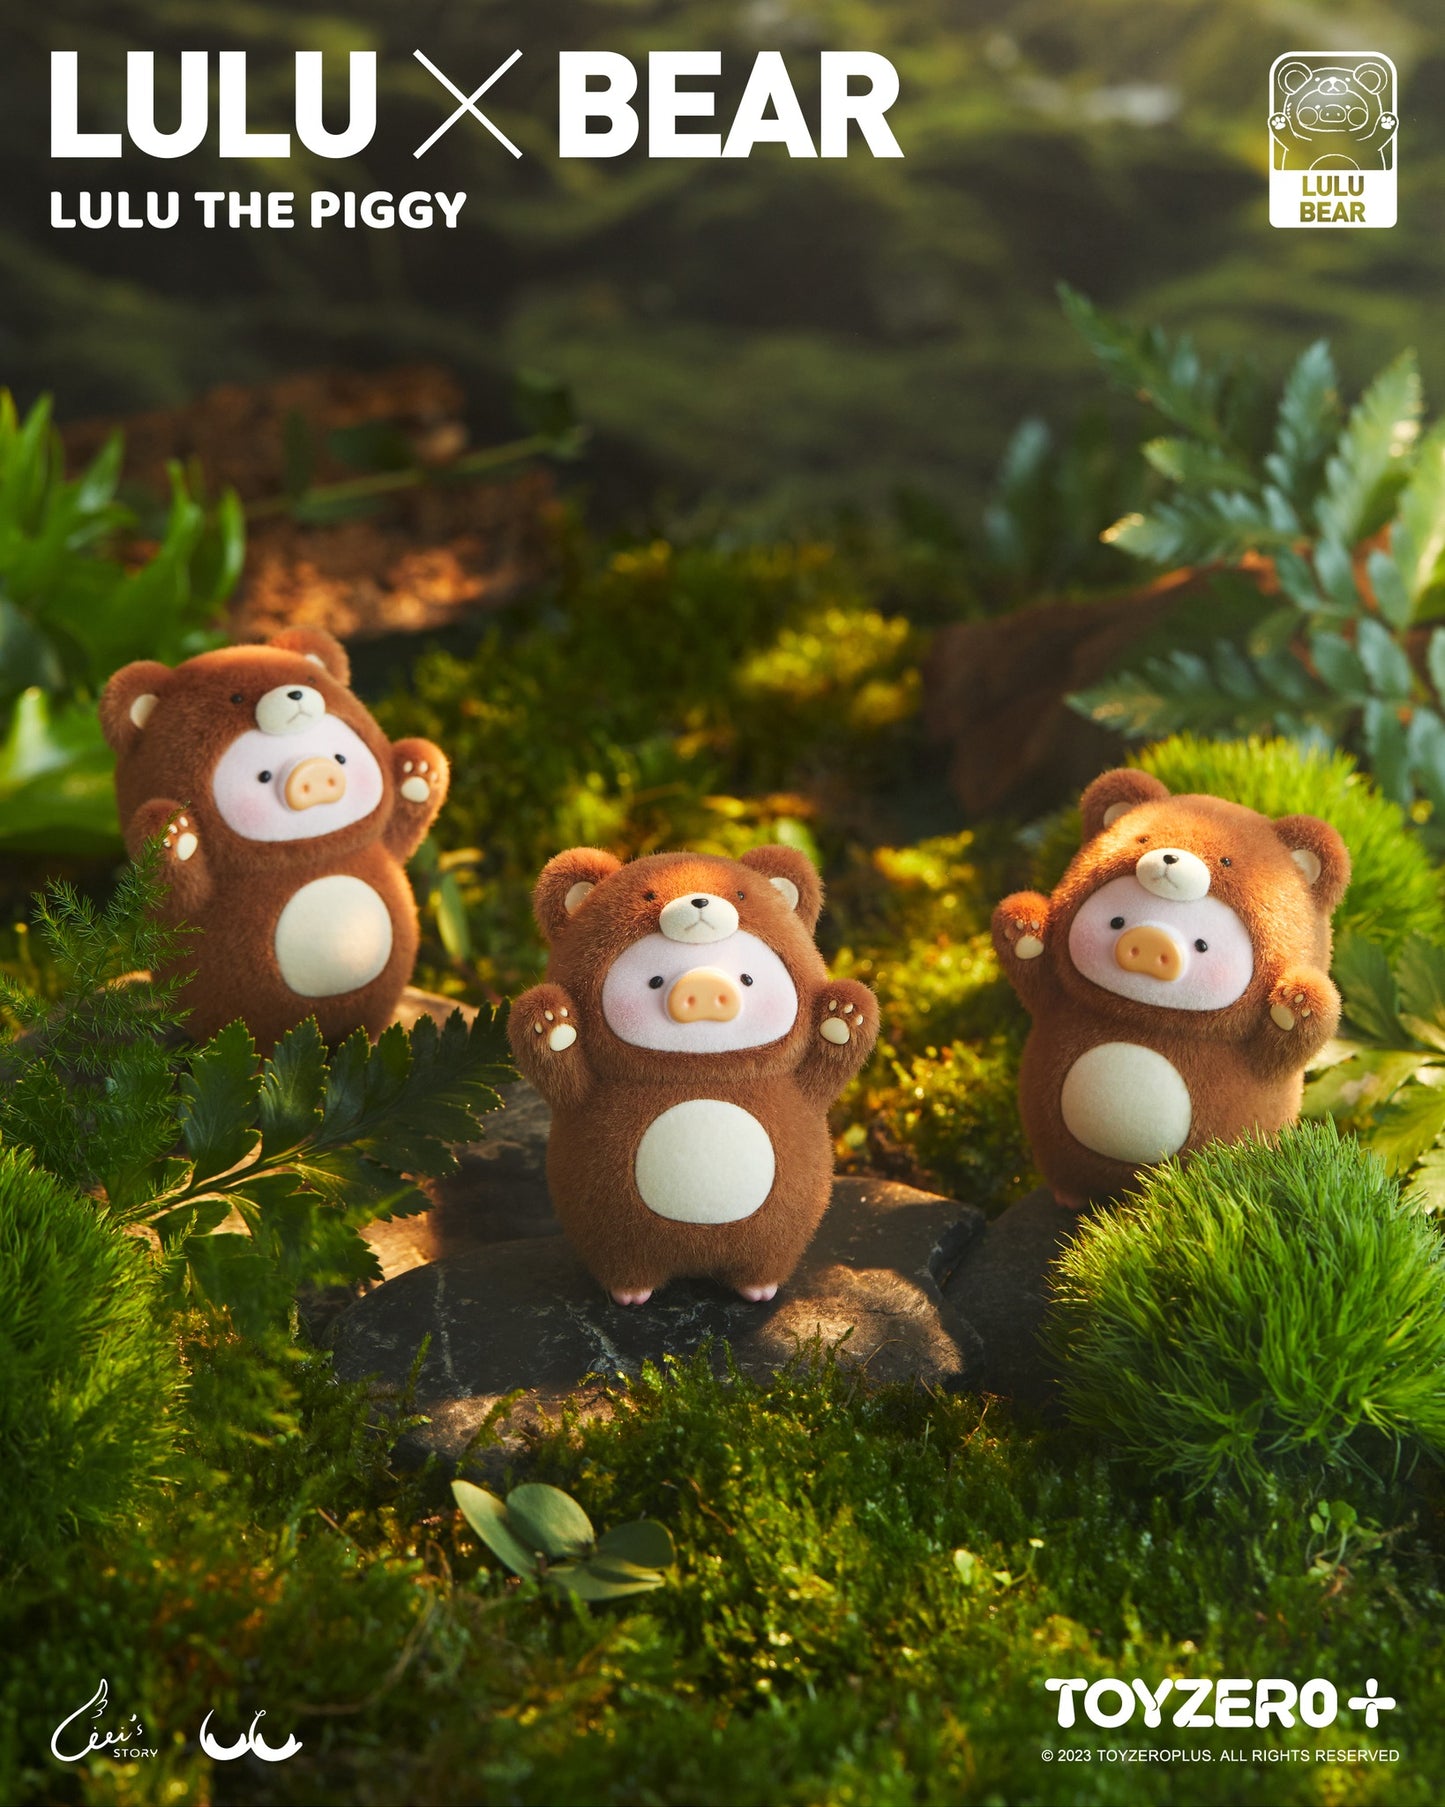 罐頭豬LuLu 豬熊出沒吊卡 LuLu the Piggy Beware of Bear LuLu